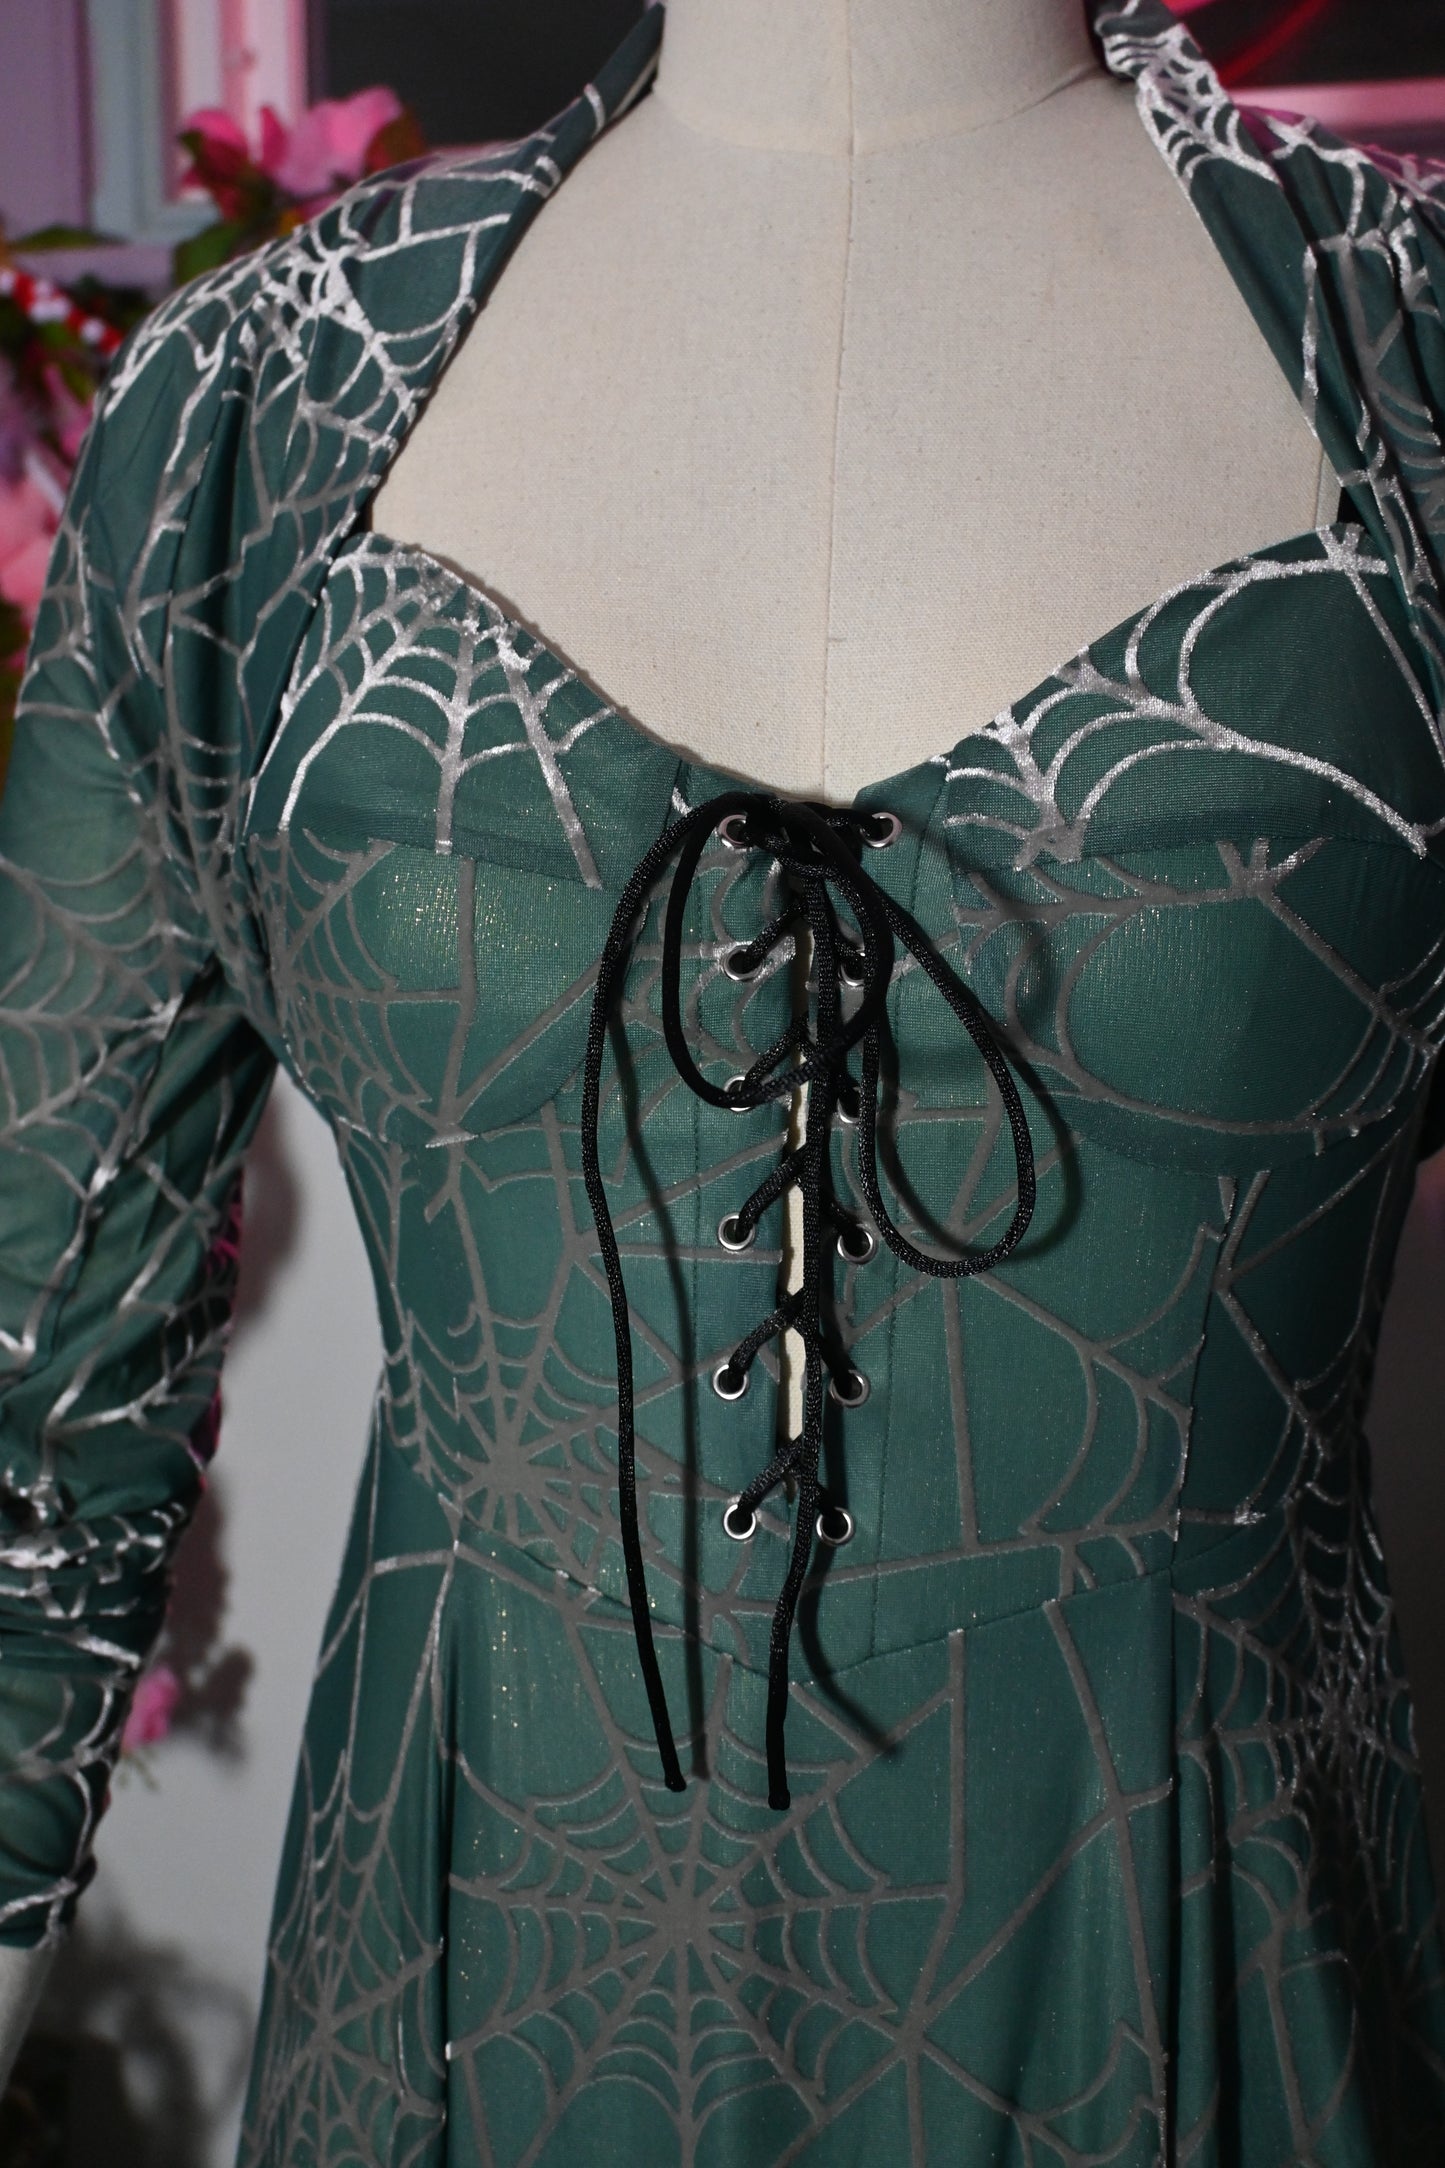 *PRE ORDER* Willow Spiderweb Maxi Dress and Bolero in Mermaid Green